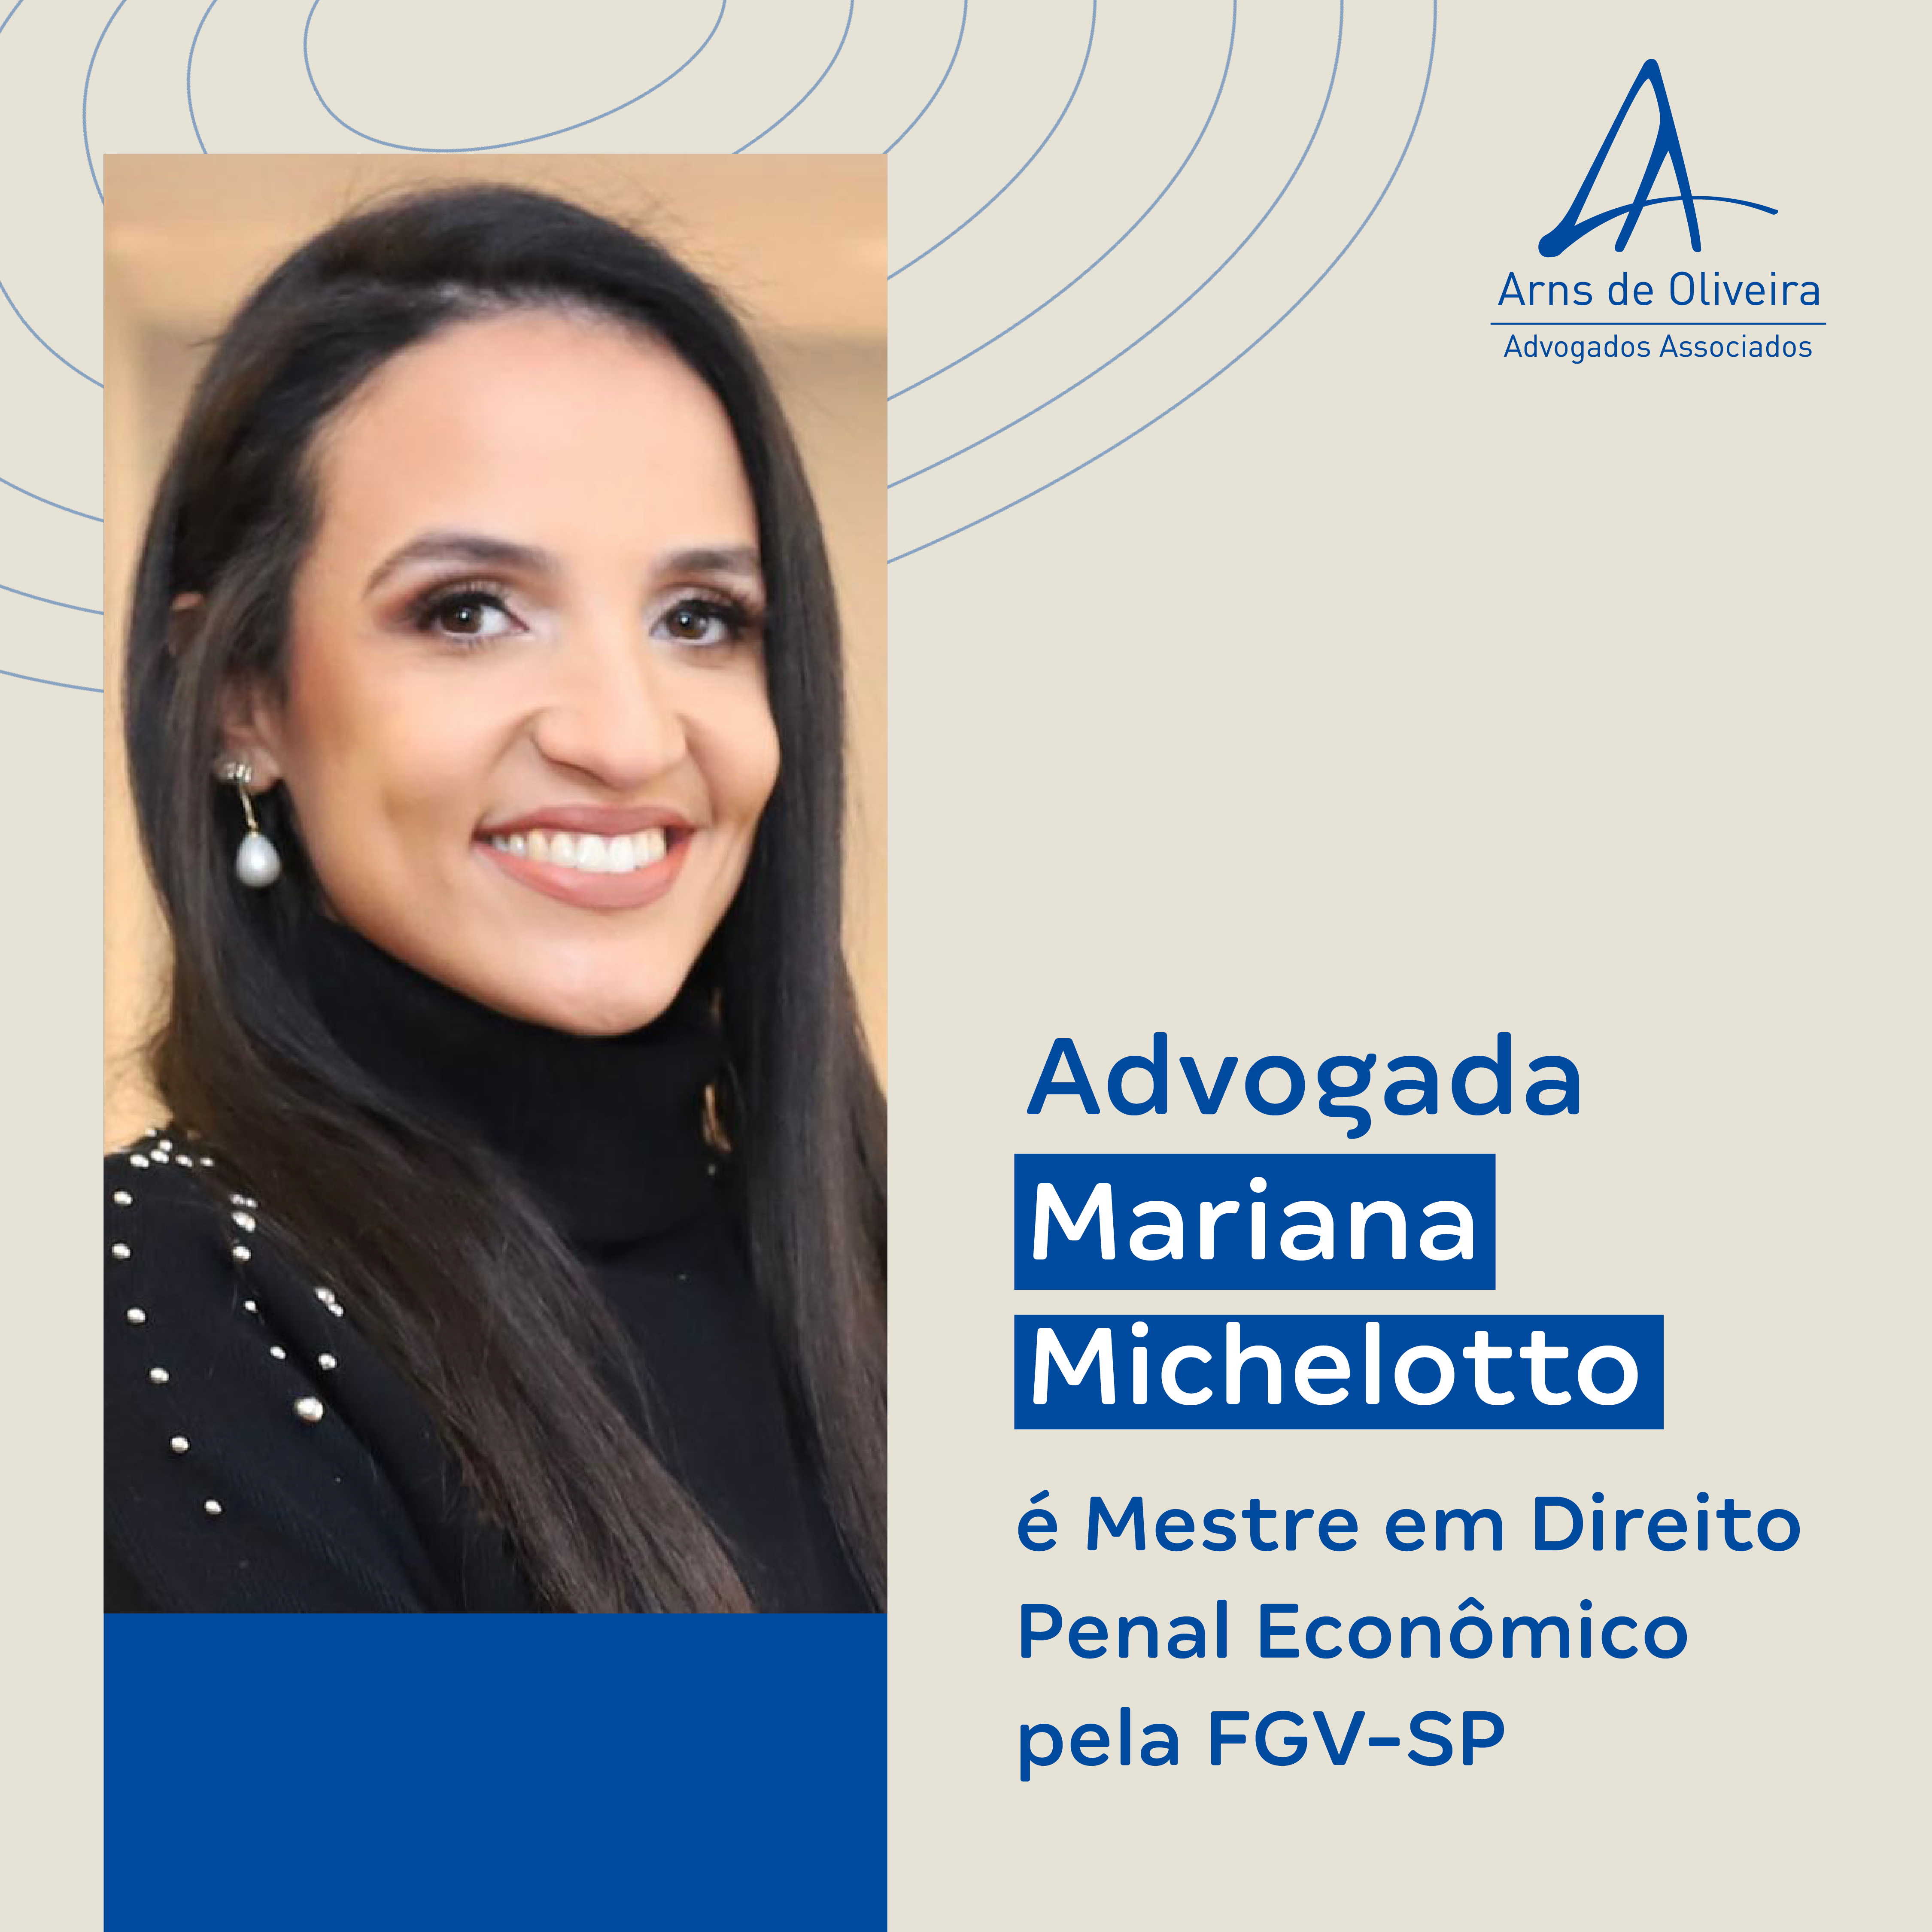 <strong>Advogada Mariana Michelotto é Mestre em Direito Penal Econômico pela FGV-SP</strong>